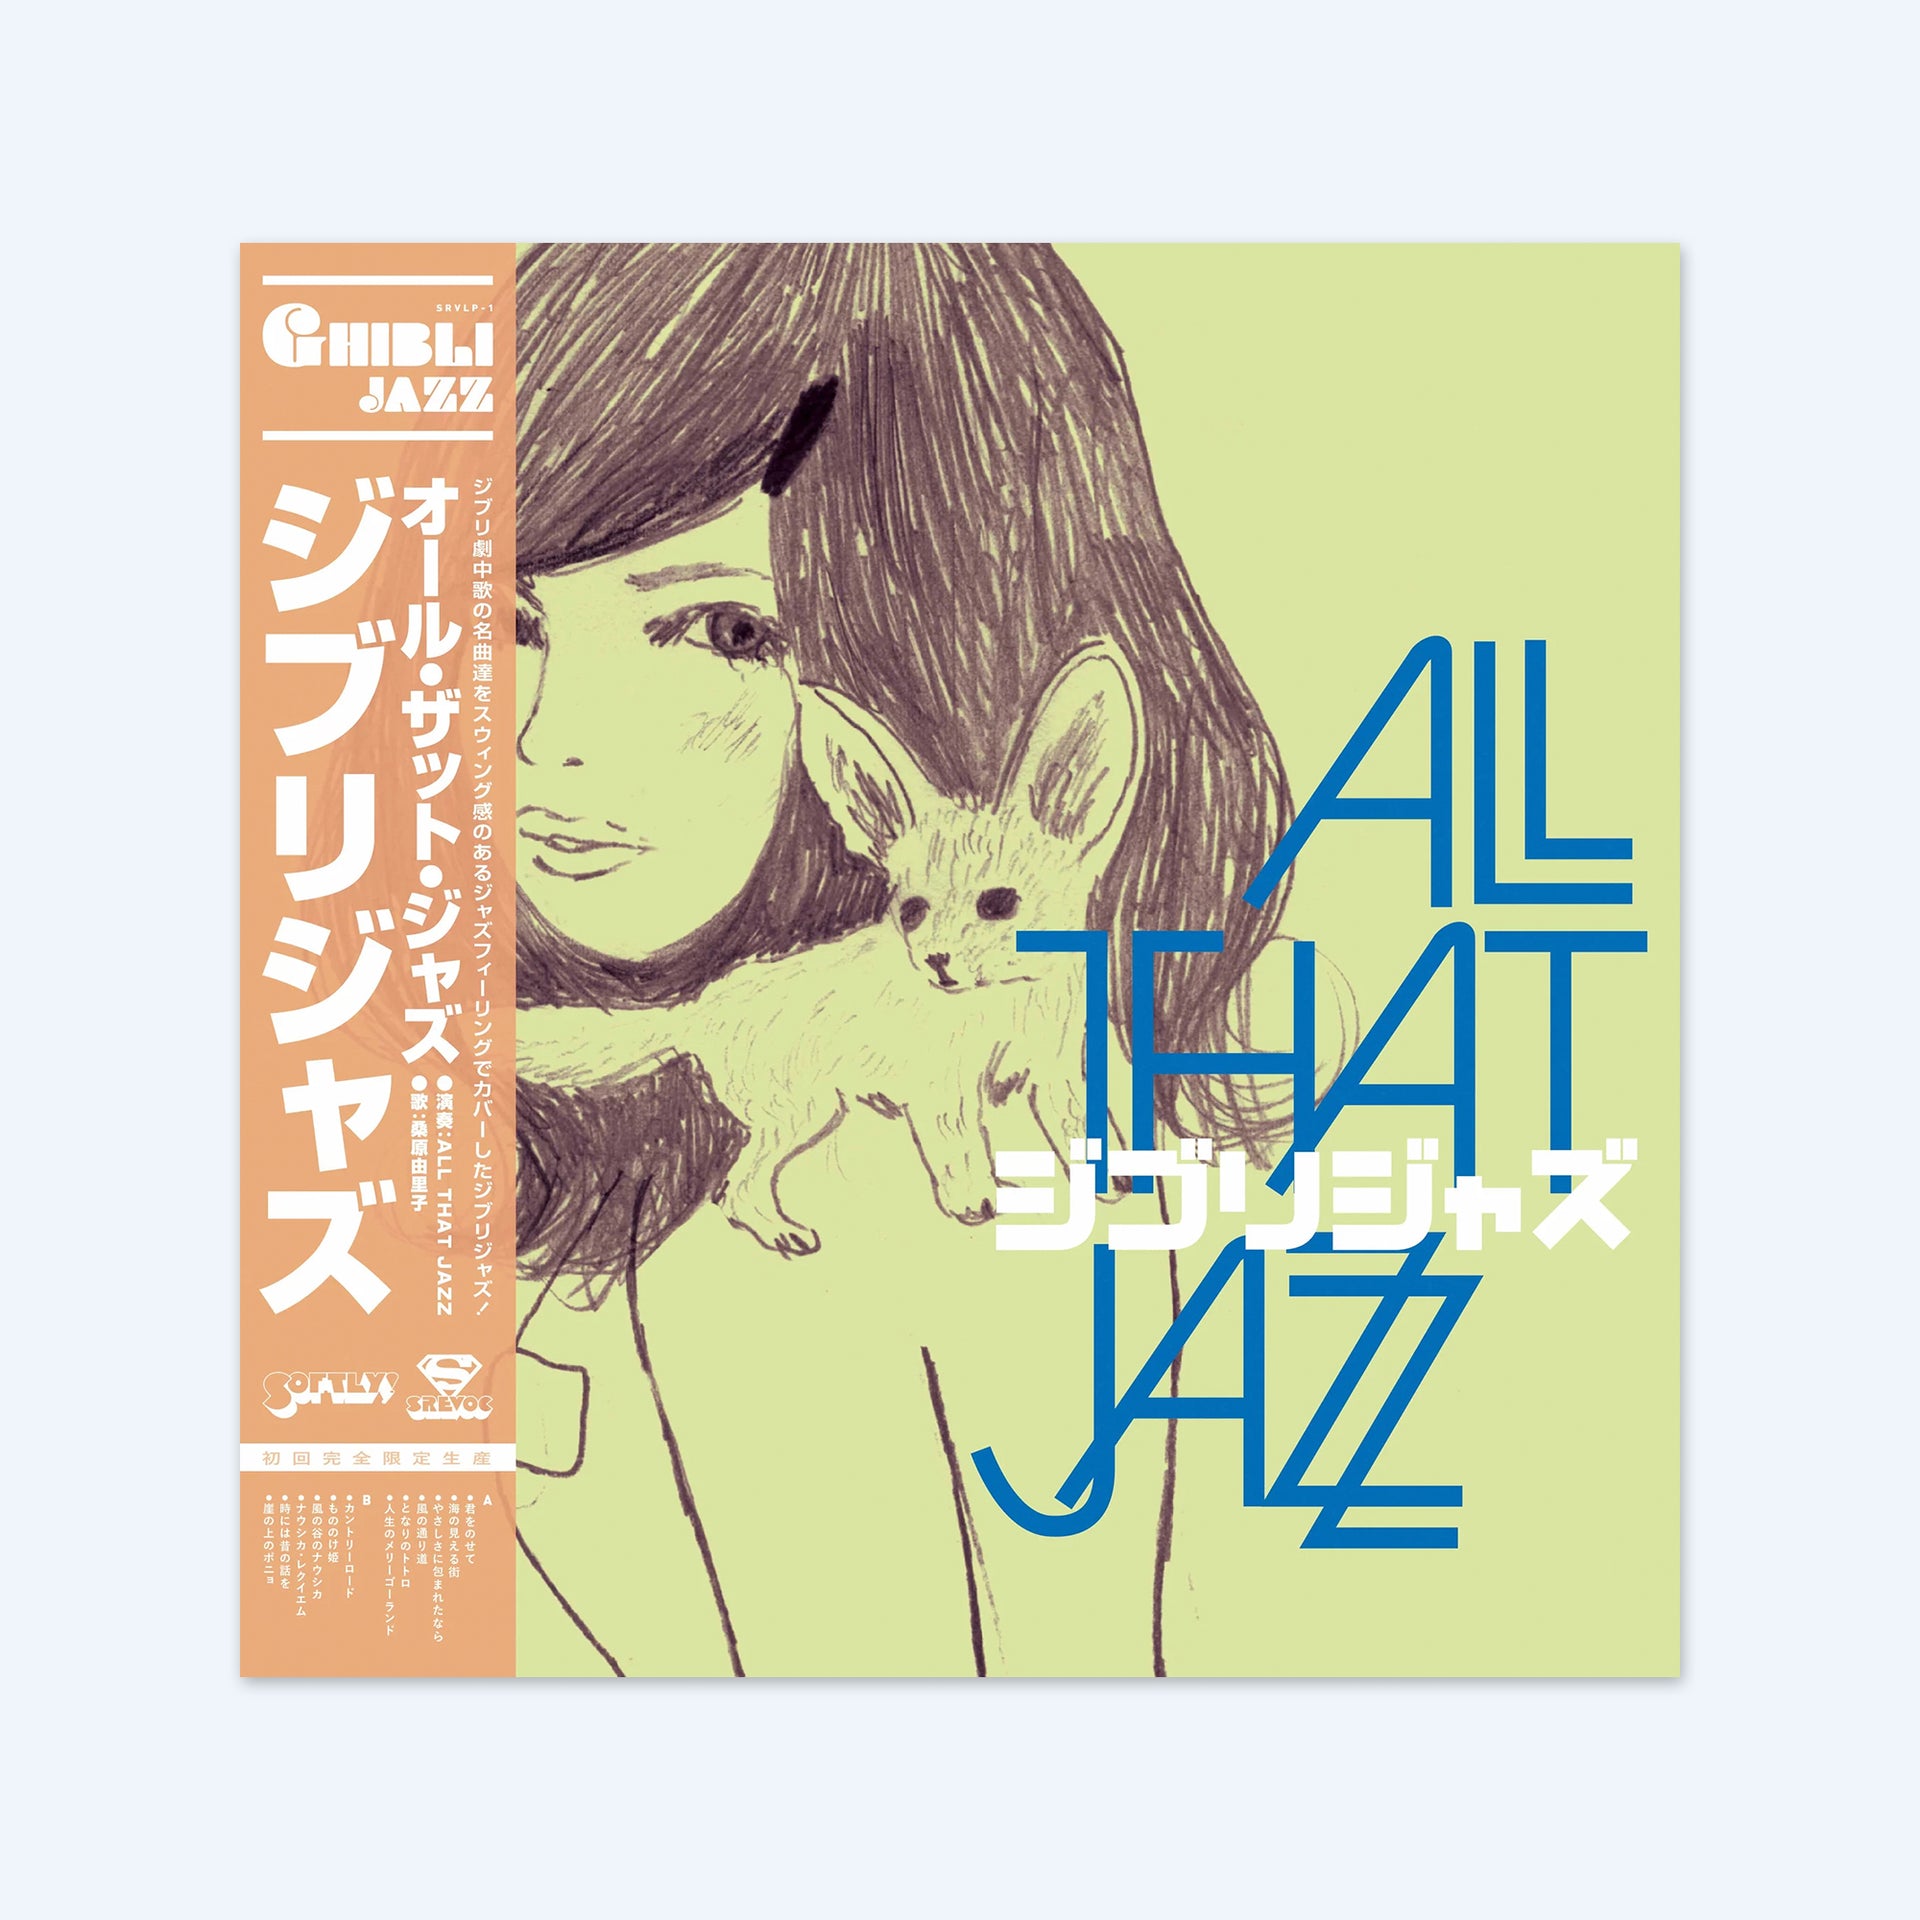 Ghibli Jazz by All That Jazz